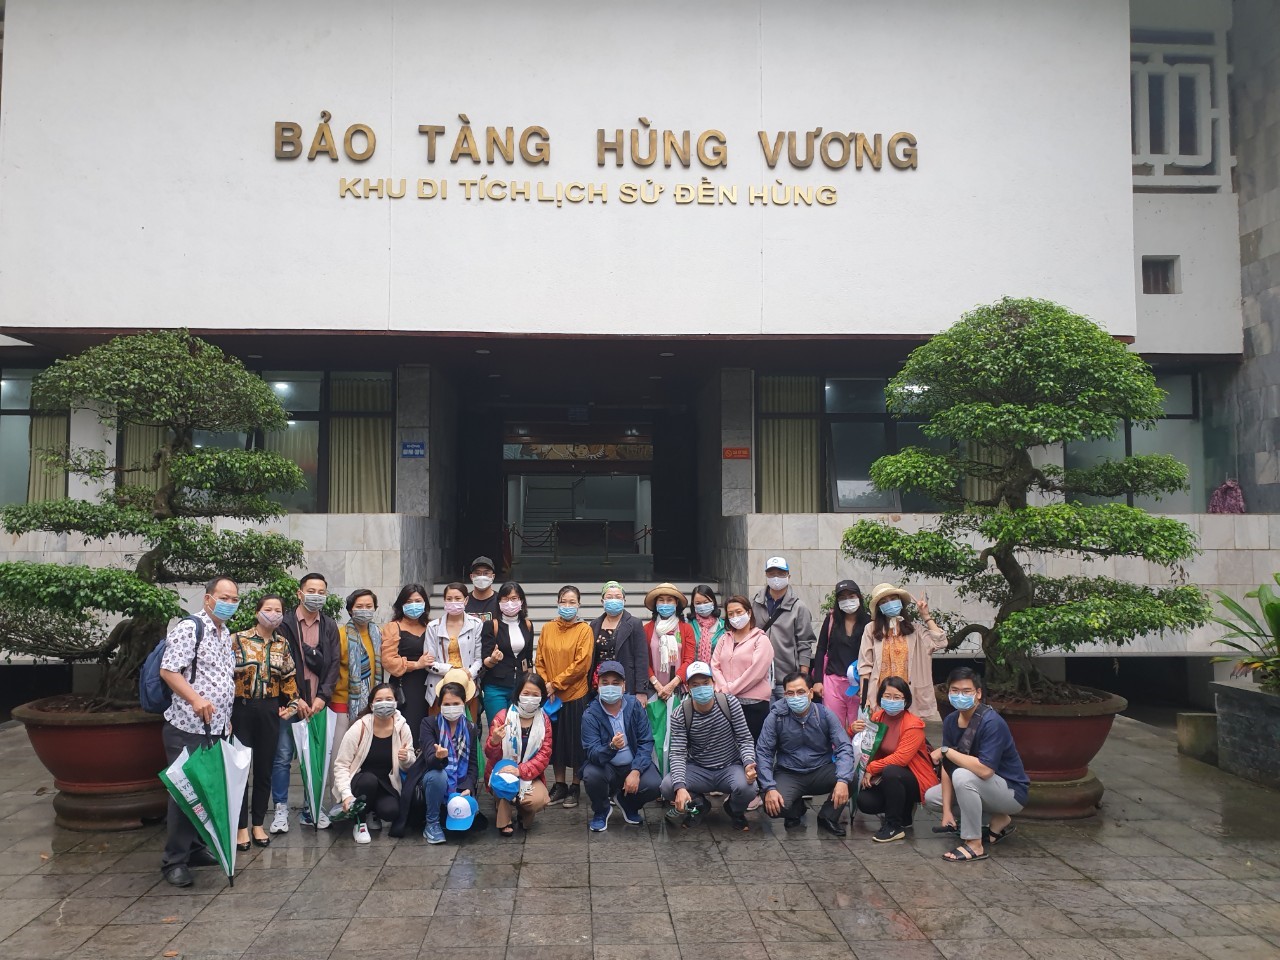 Tham quan Đền Hùng và Bảo tàng Hùng Vương